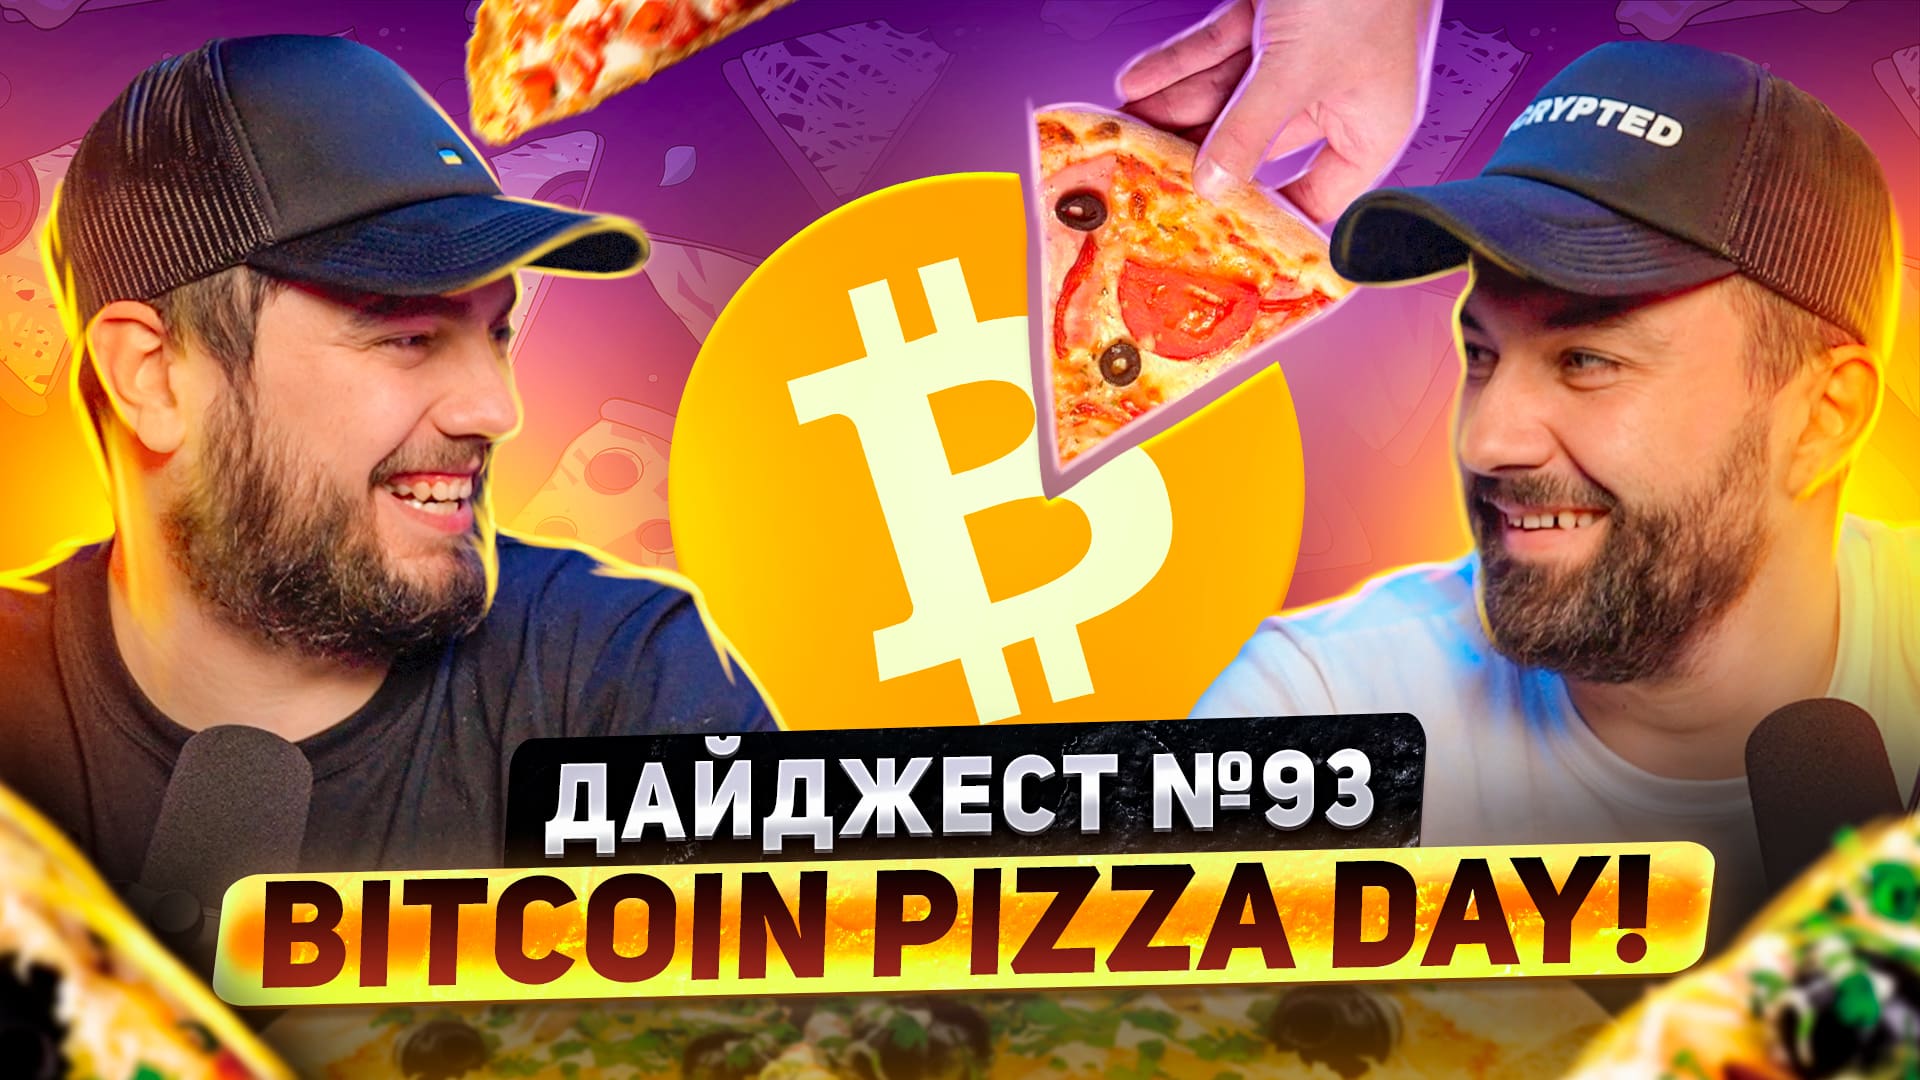 Bitcoin Pizza Day | CZ потерял $1.6 млрд. на LUNA | Ethereum 2.0 в августе. Заглавный коллаж новости.